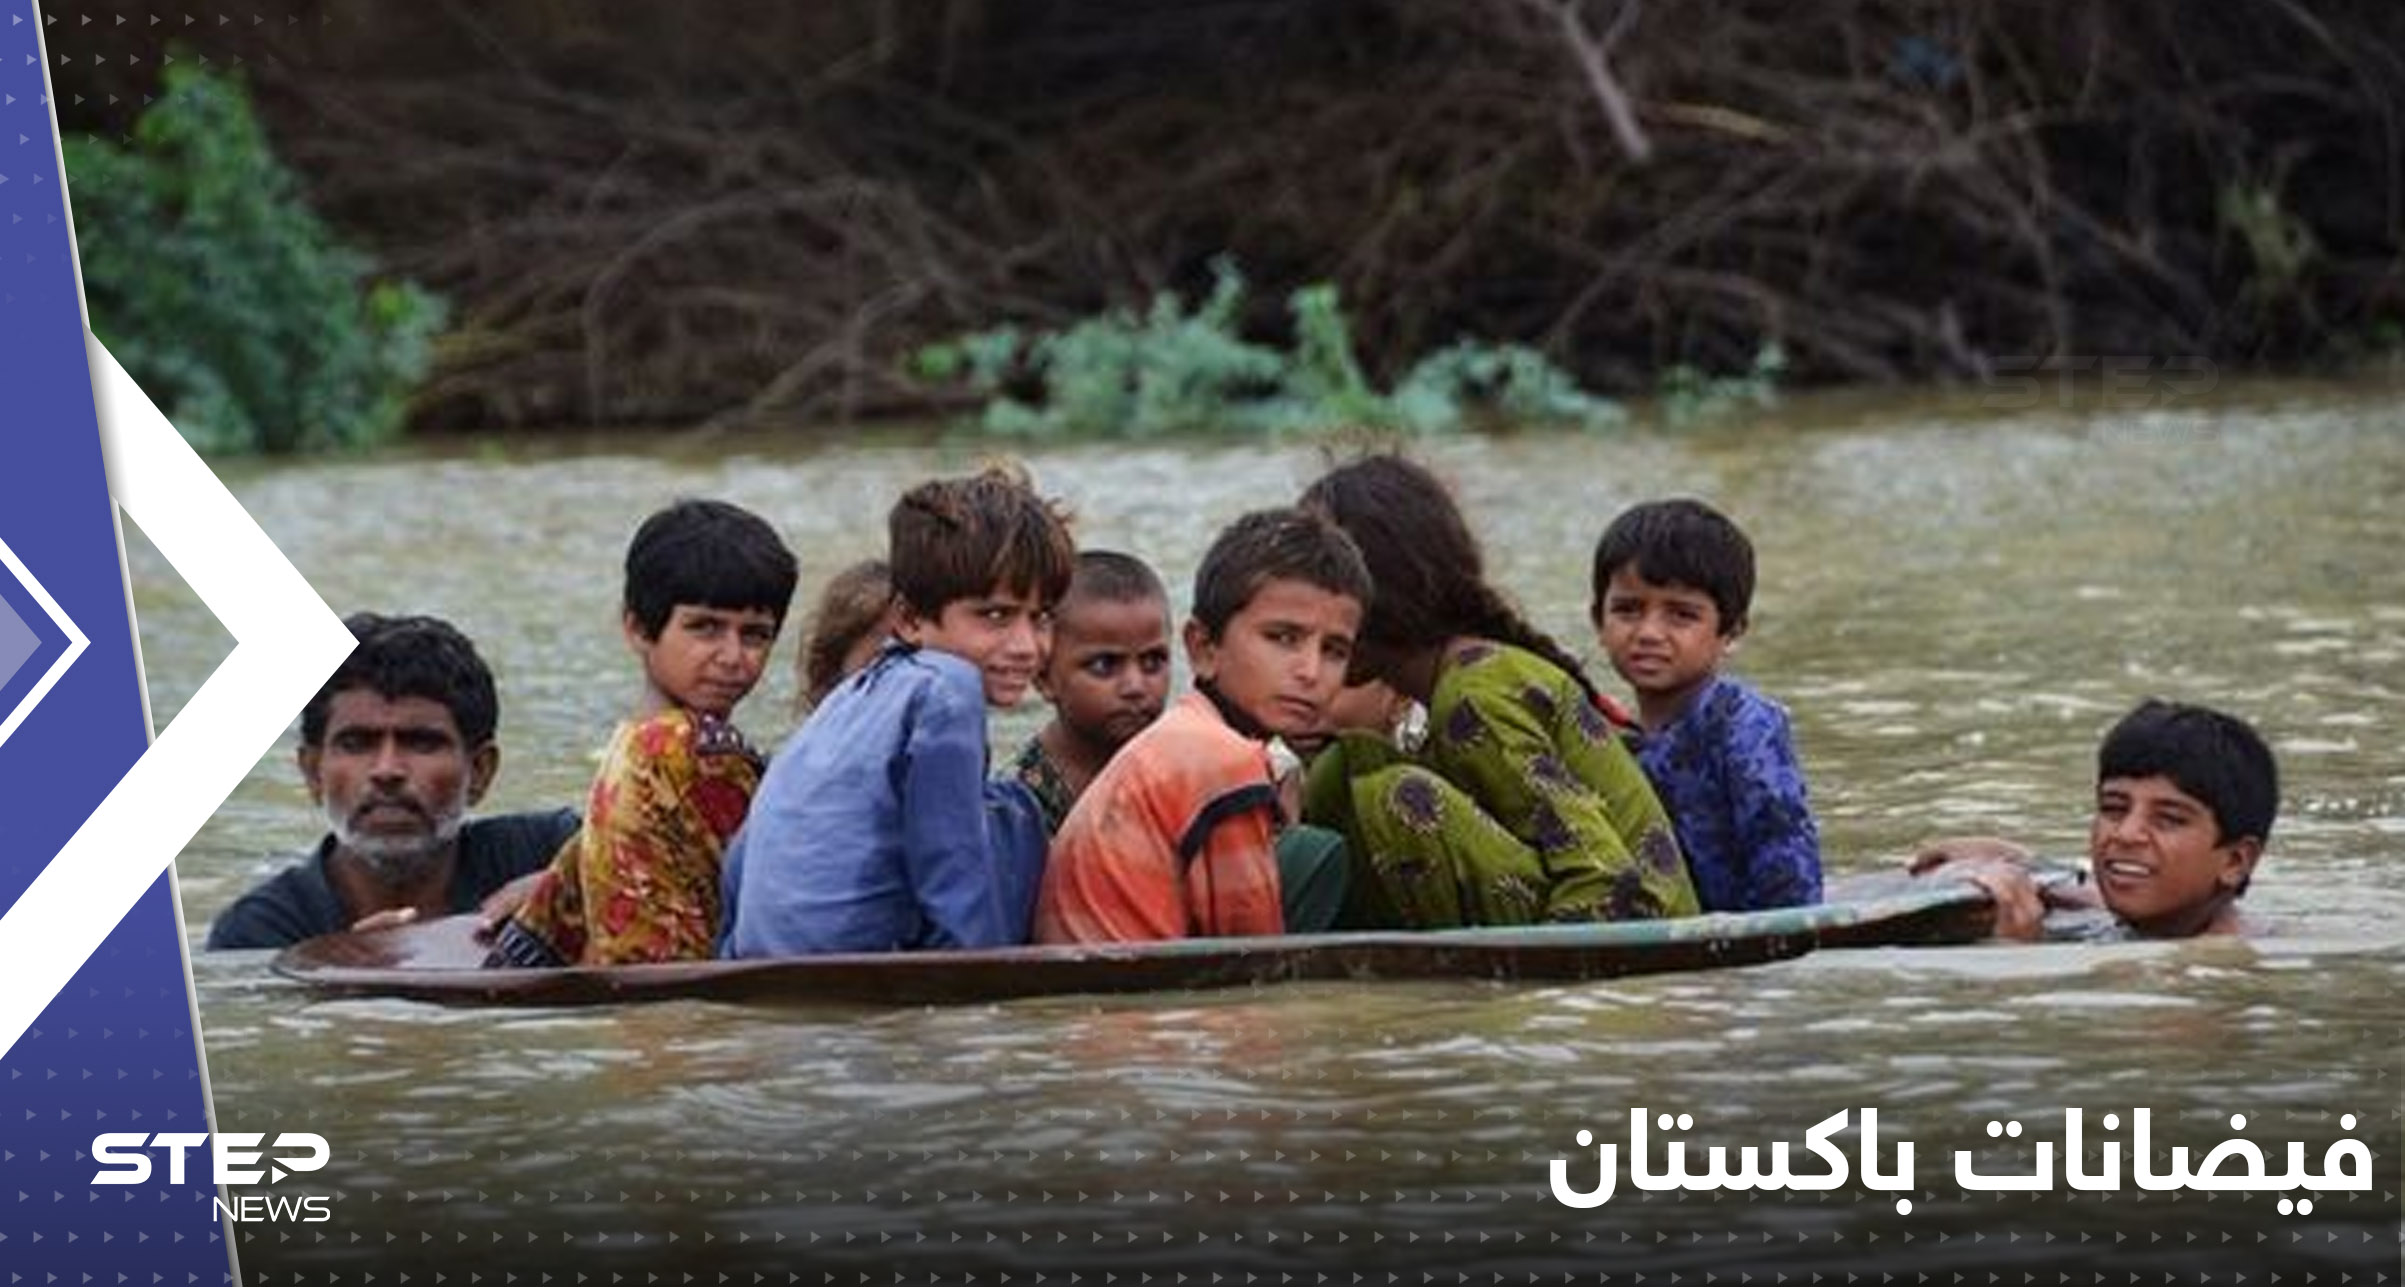 "لم أشاهد يوماً كارثة مناخية بهذا الحجم".. غوتيريش يصف فيضانات باكستان